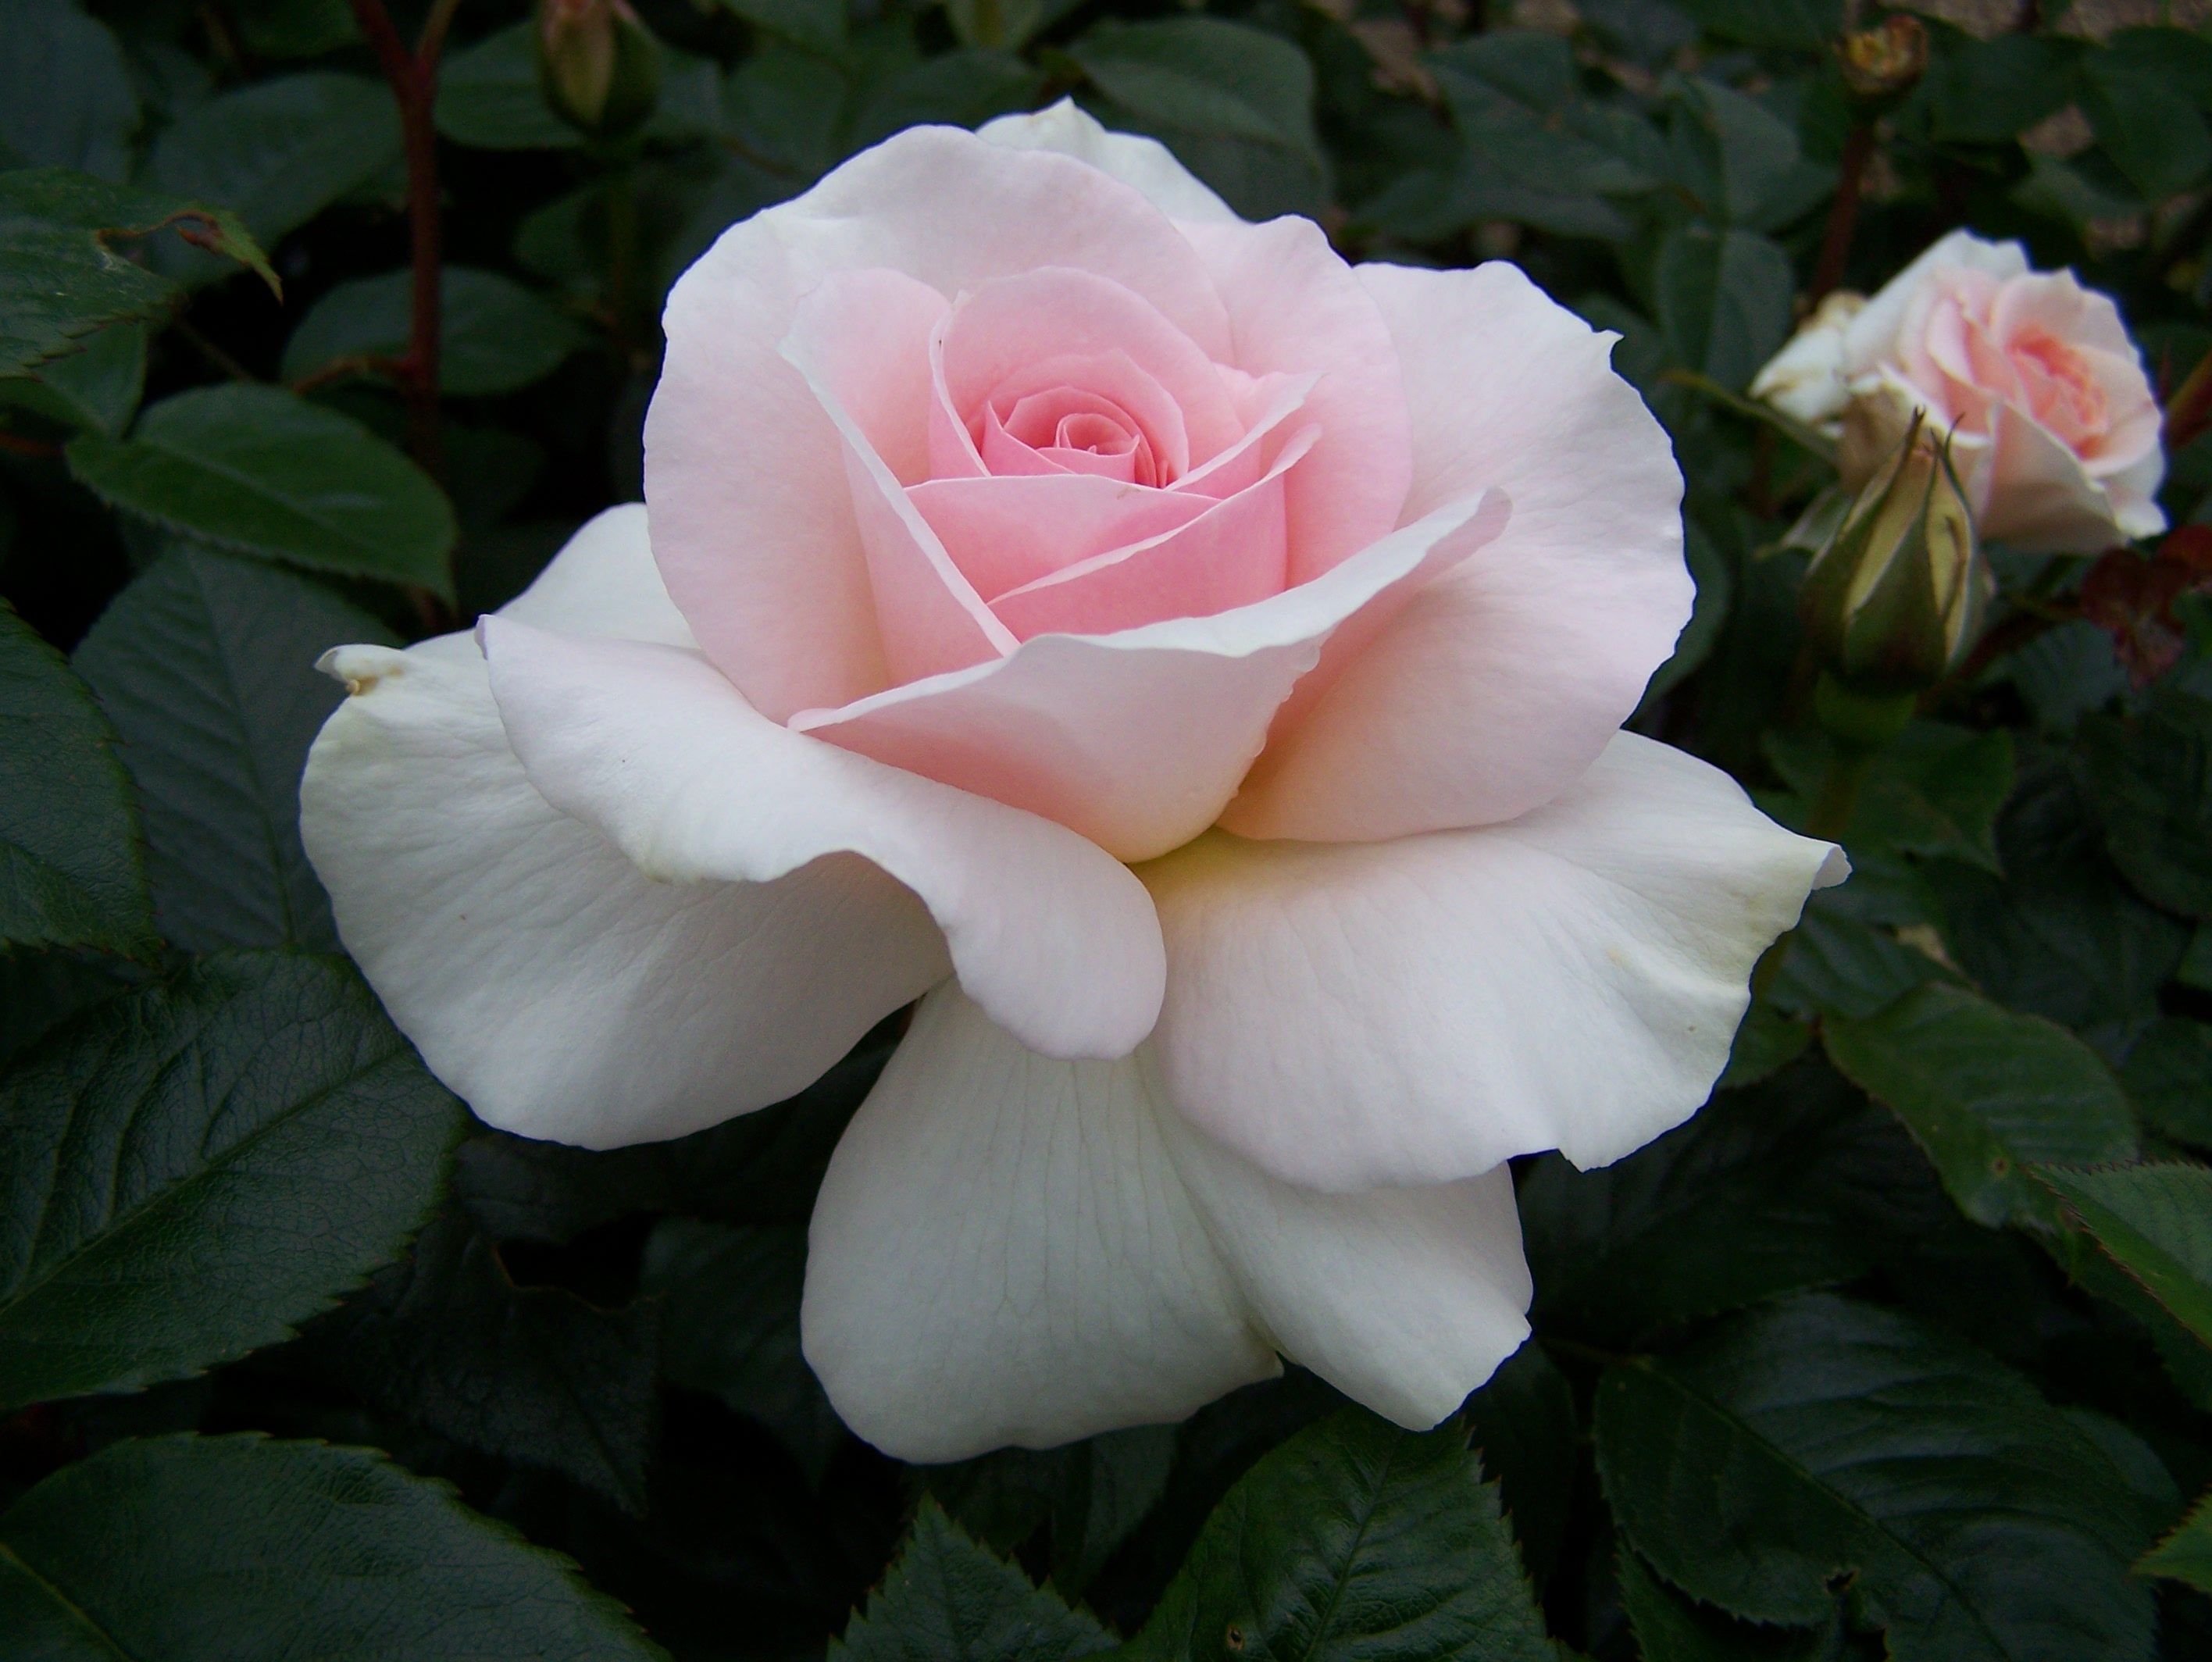 white hybrid tea rose - Google Search | Flowers - Roses | Pinterest ...